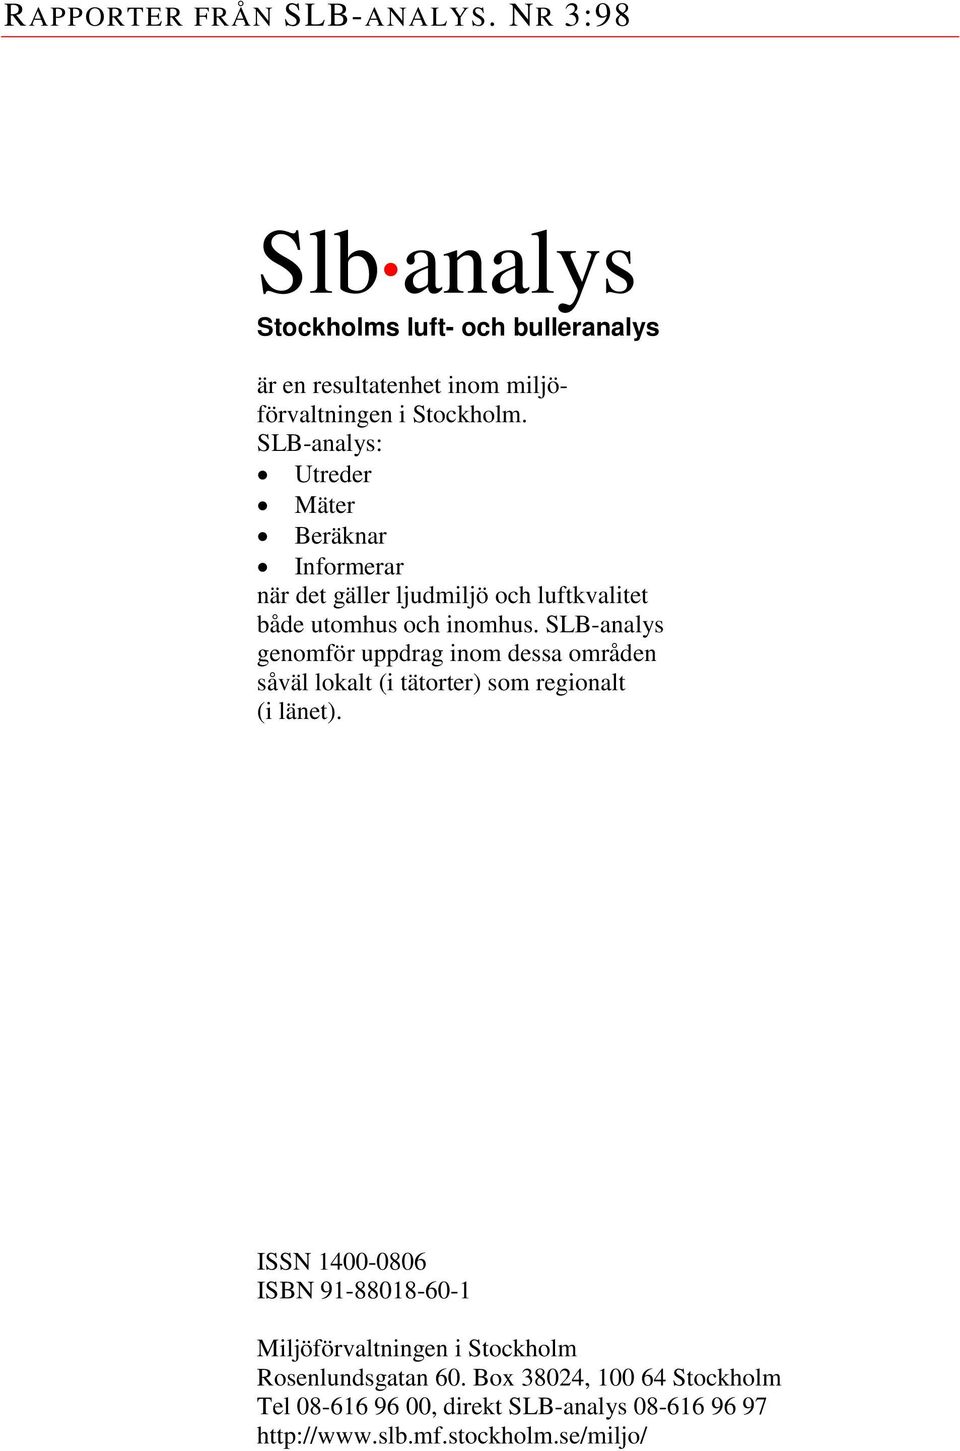 SLB-analys genomför uppdrag inom dessa områden såväl lokalt (i tätorter) som regionalt (i länet).